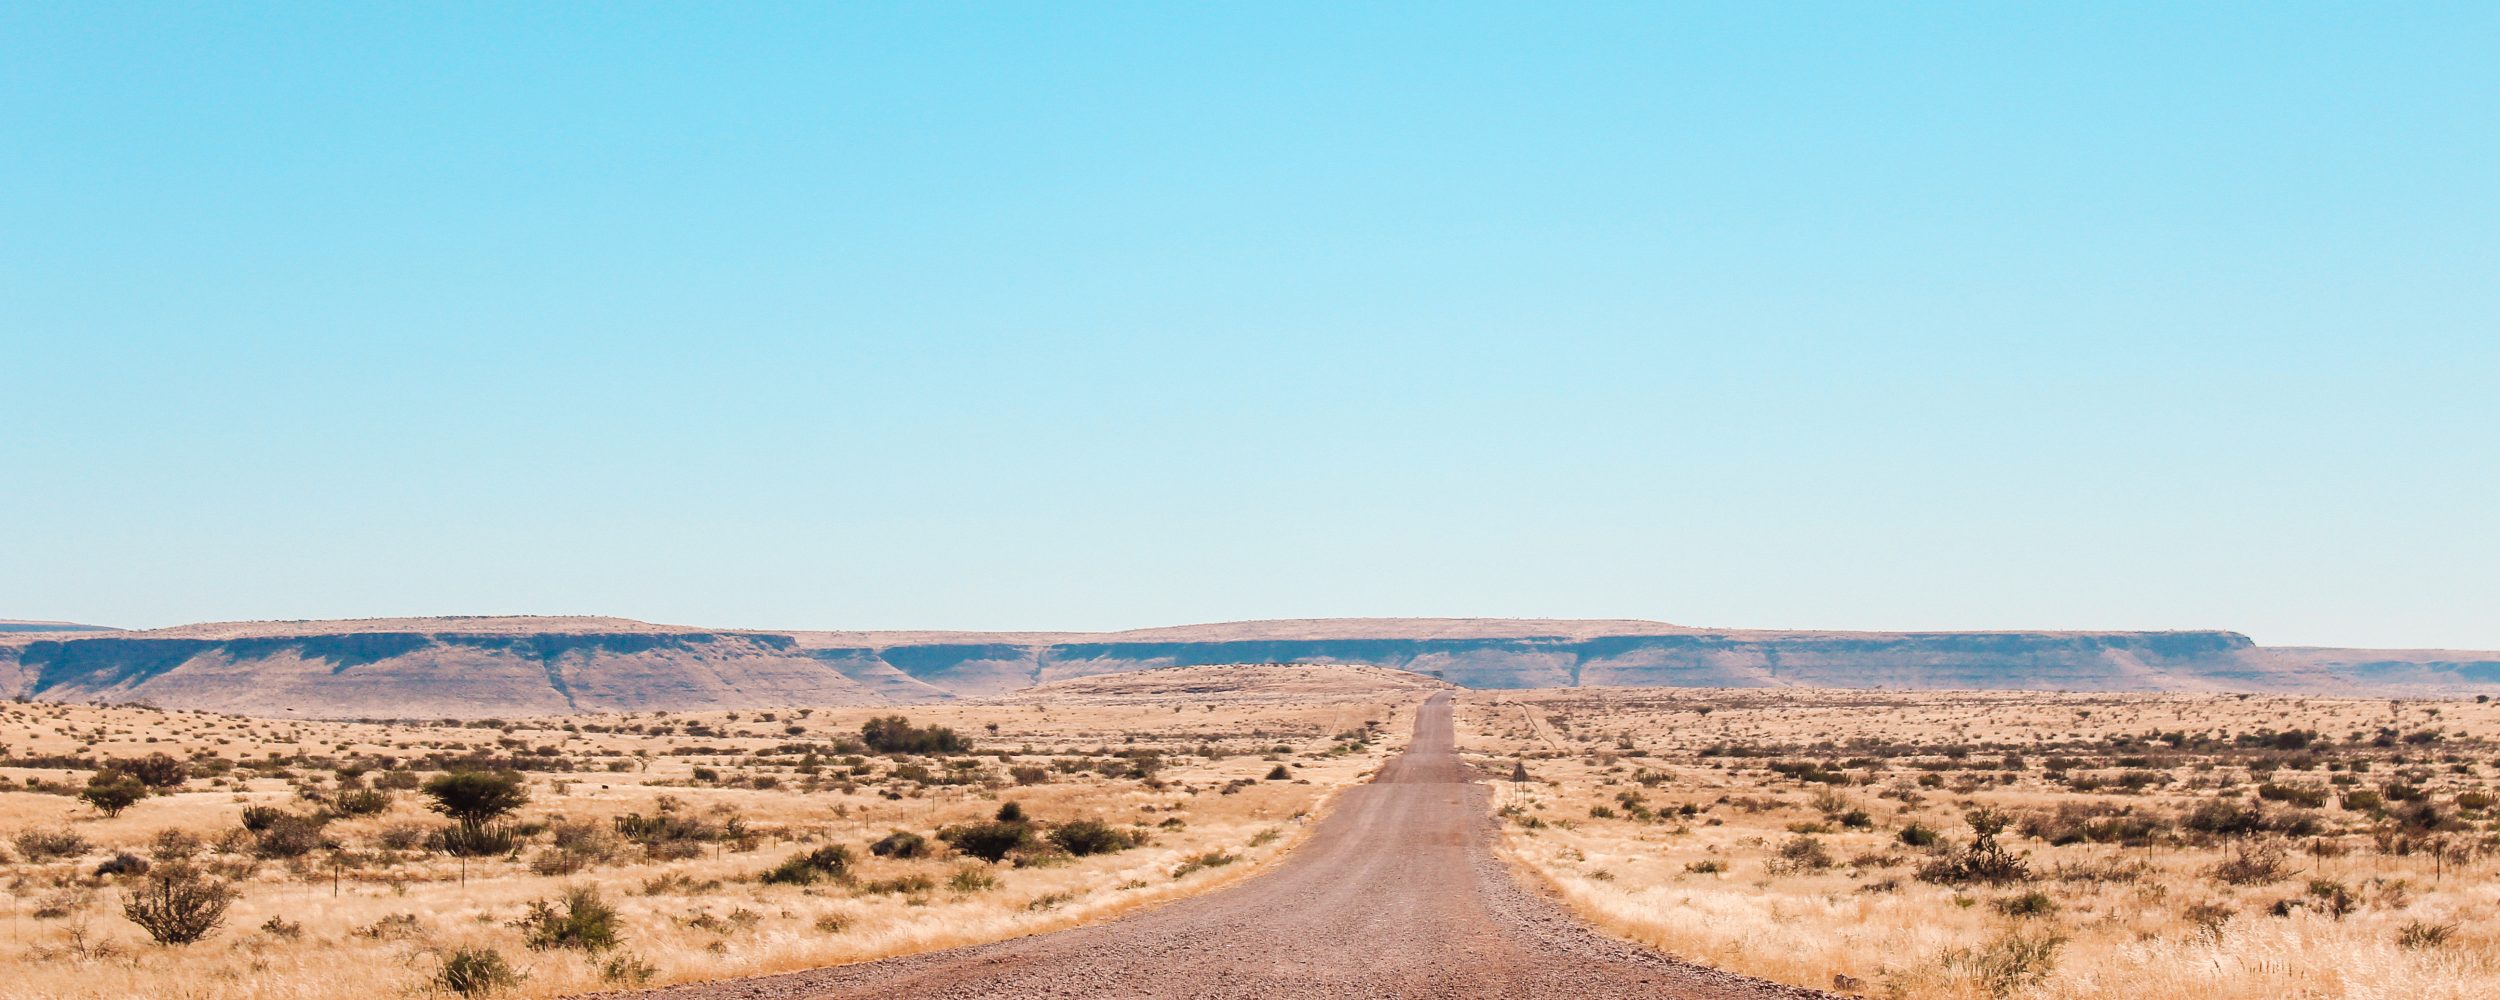 Un camino de ripio en Namibia